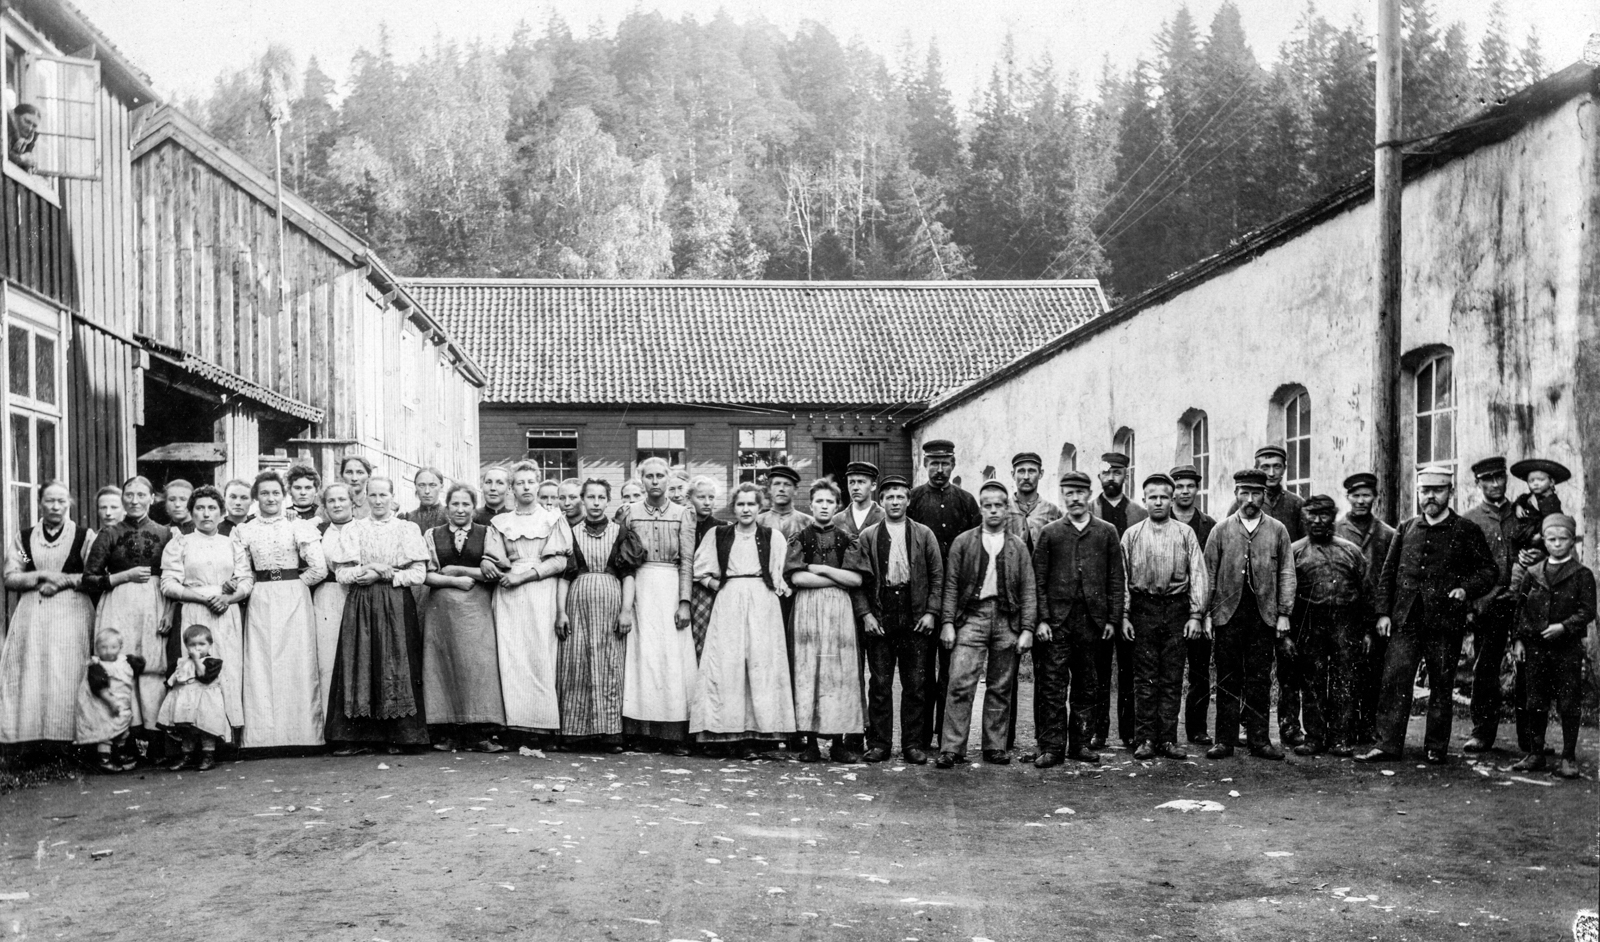 Nydalens fabrikker (1890-tallet)